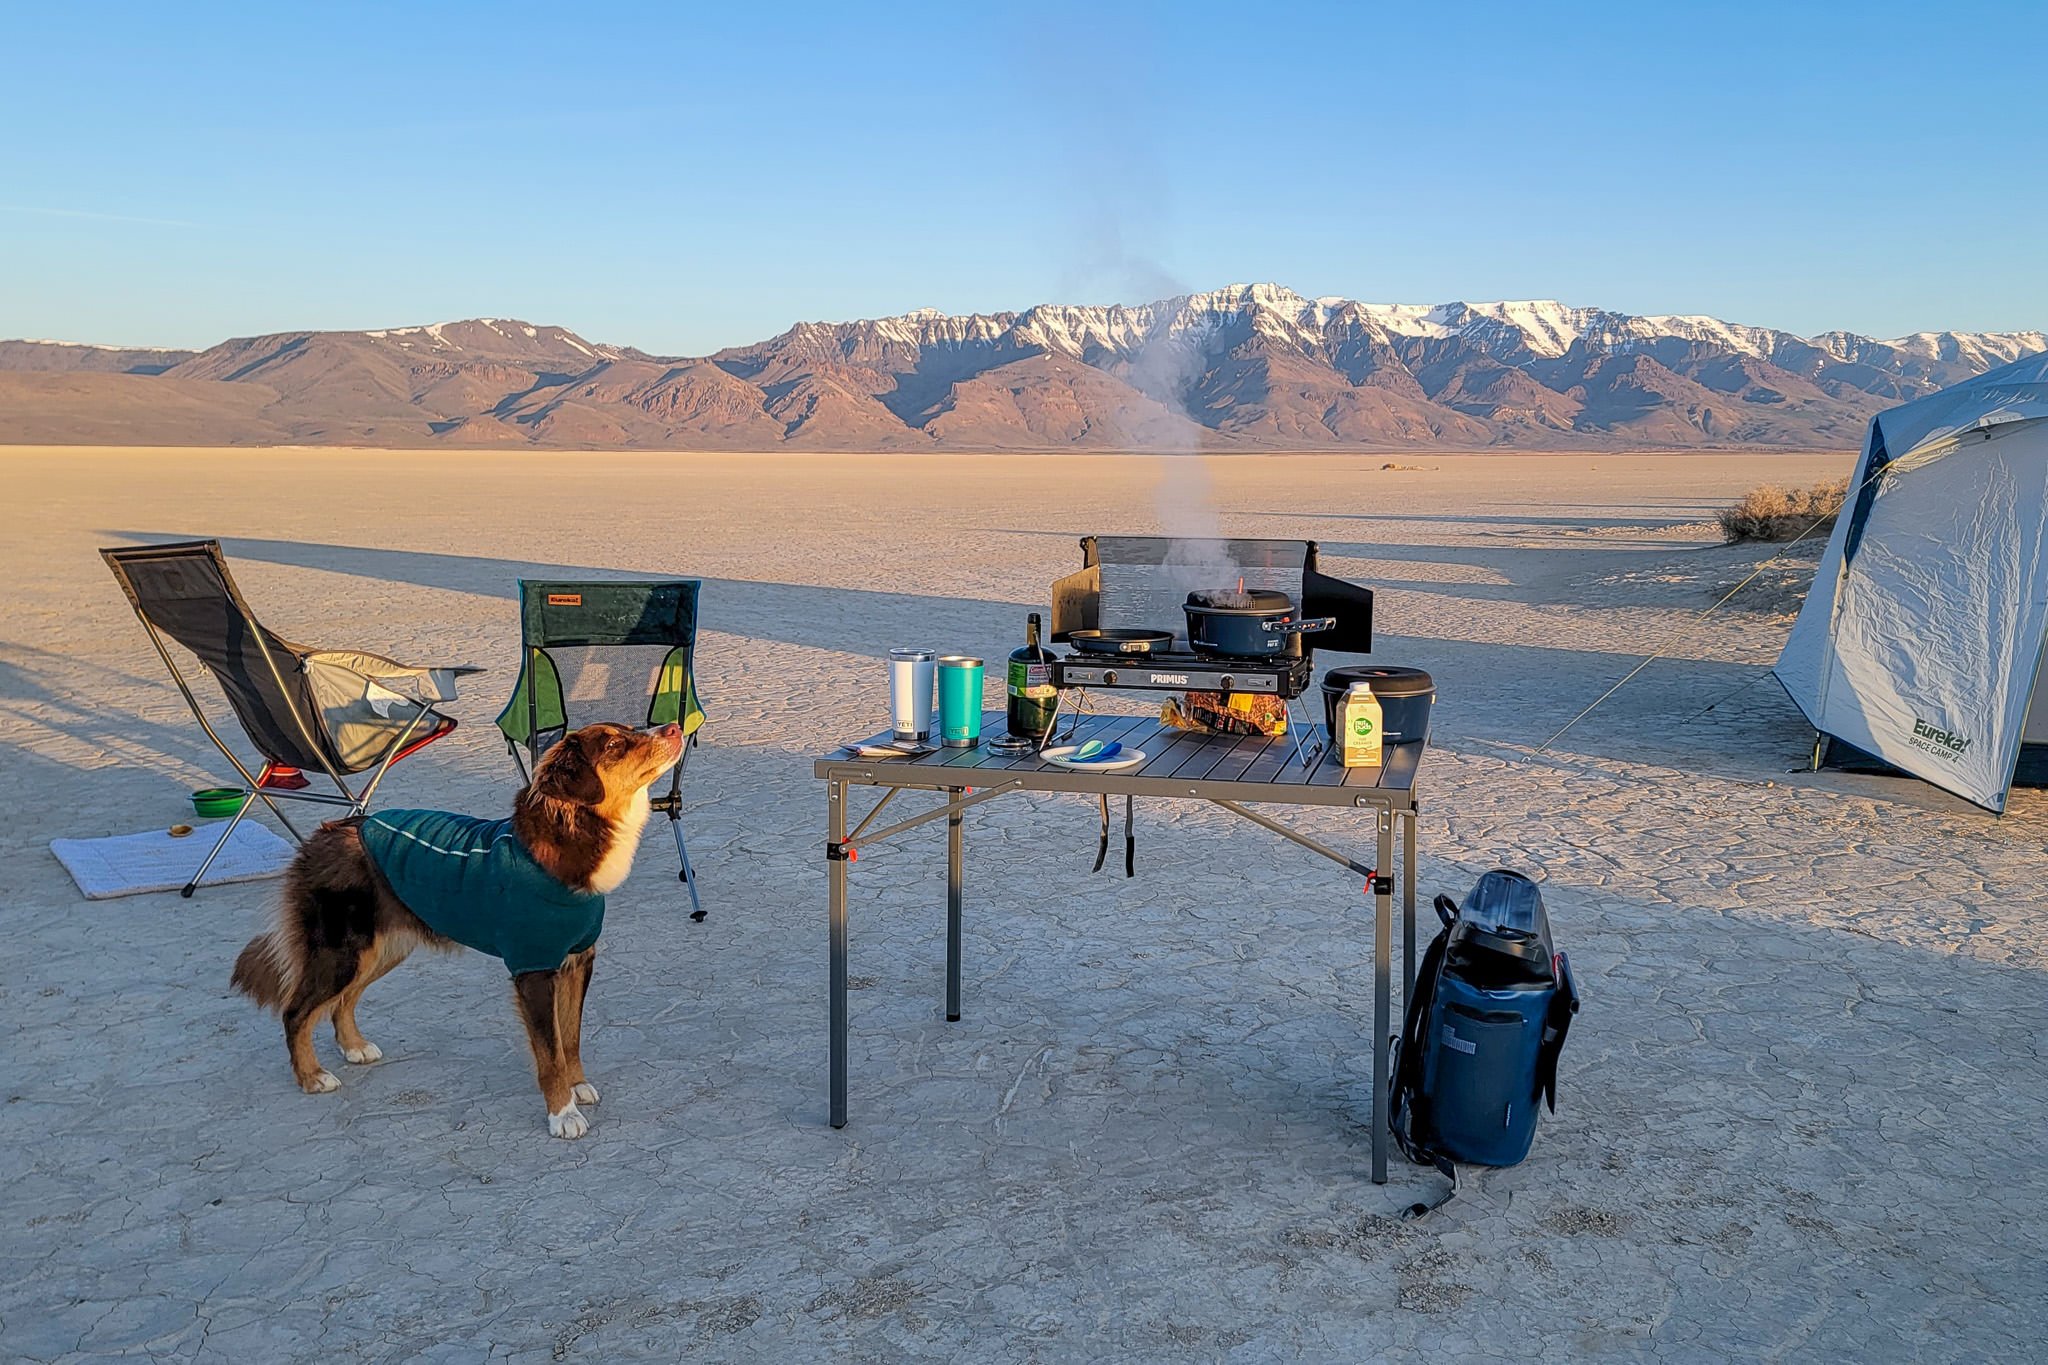 🏆 Quelles sont les meilleures tables camping ? Comparatif 2023